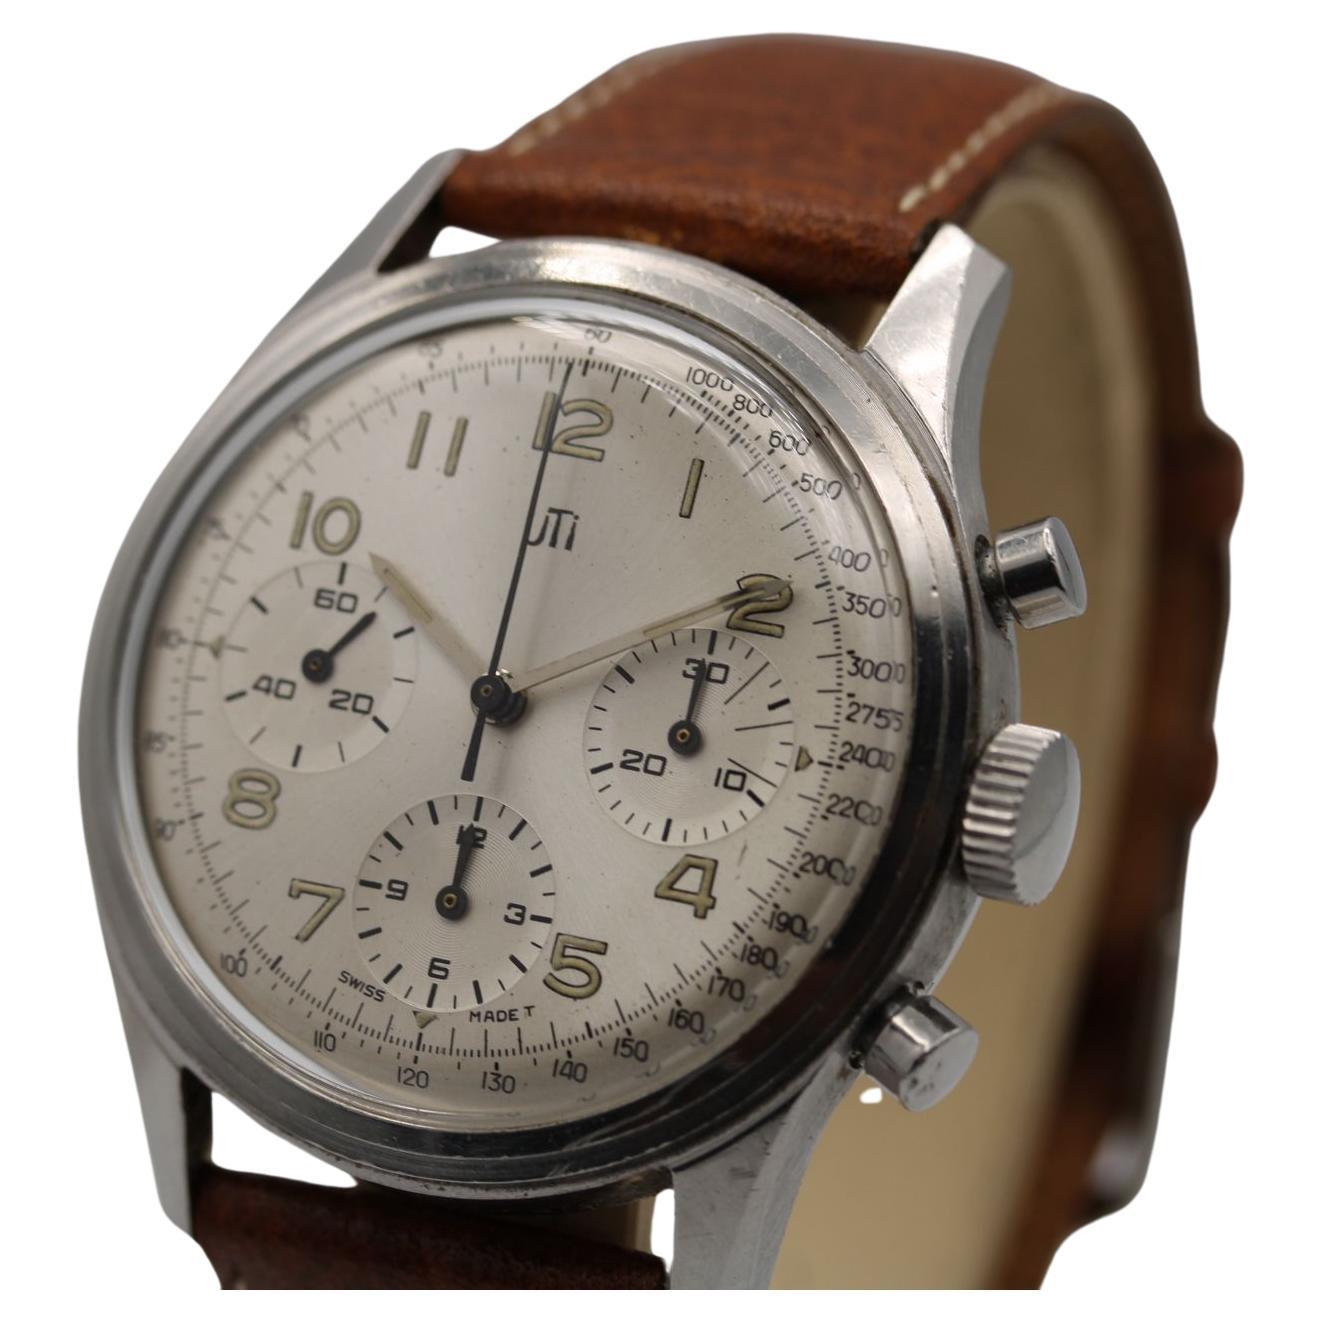 Bereits Mitte der 50er Jahre kam es zu Kollaborationen zwischen dem französischen Uhrenhersteller UTI (1906-1984) und anderen großen Uhrenmarken, die es UTI ermöglichten, Uhren mit ihrem Logo auf dem Zifferblatt auf den Markt zu bringen. Eines